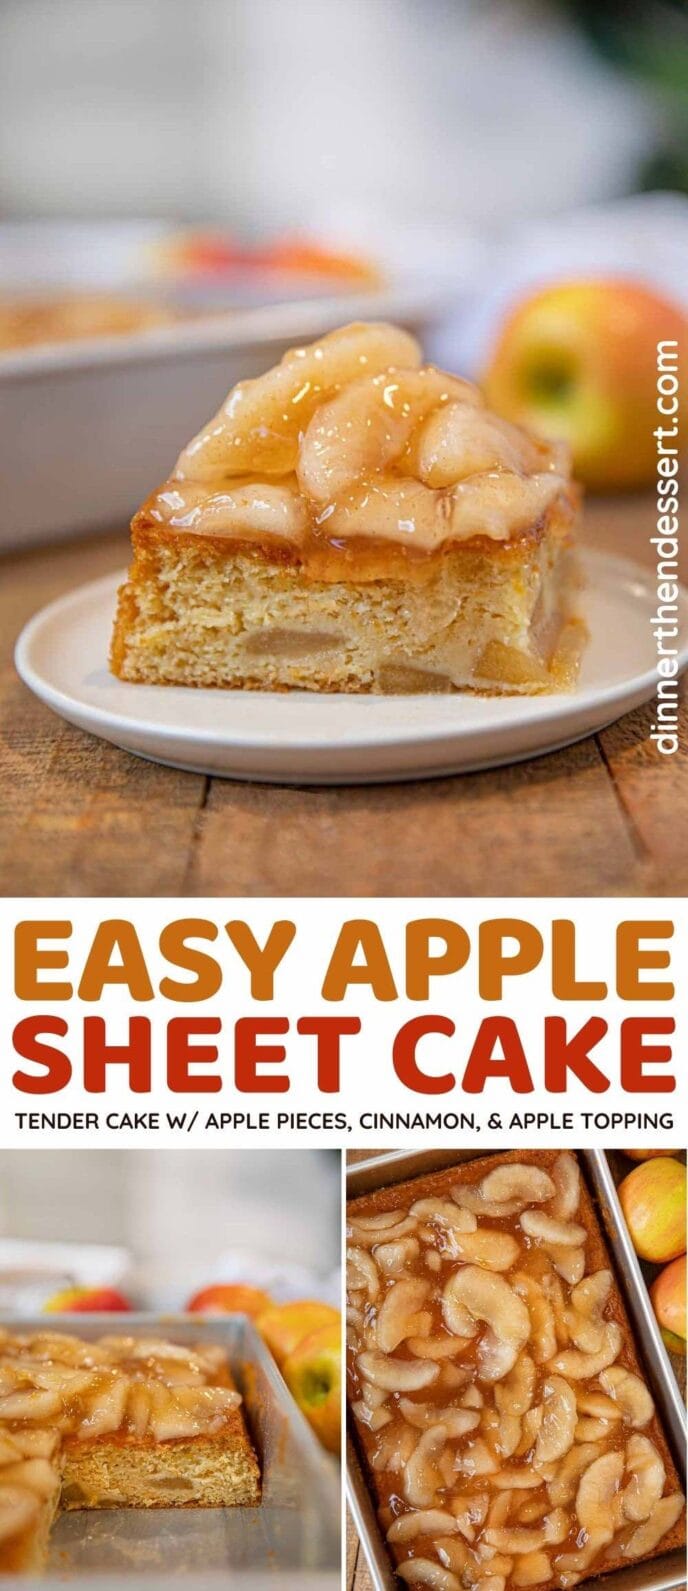 Apple Sheet Cake collage